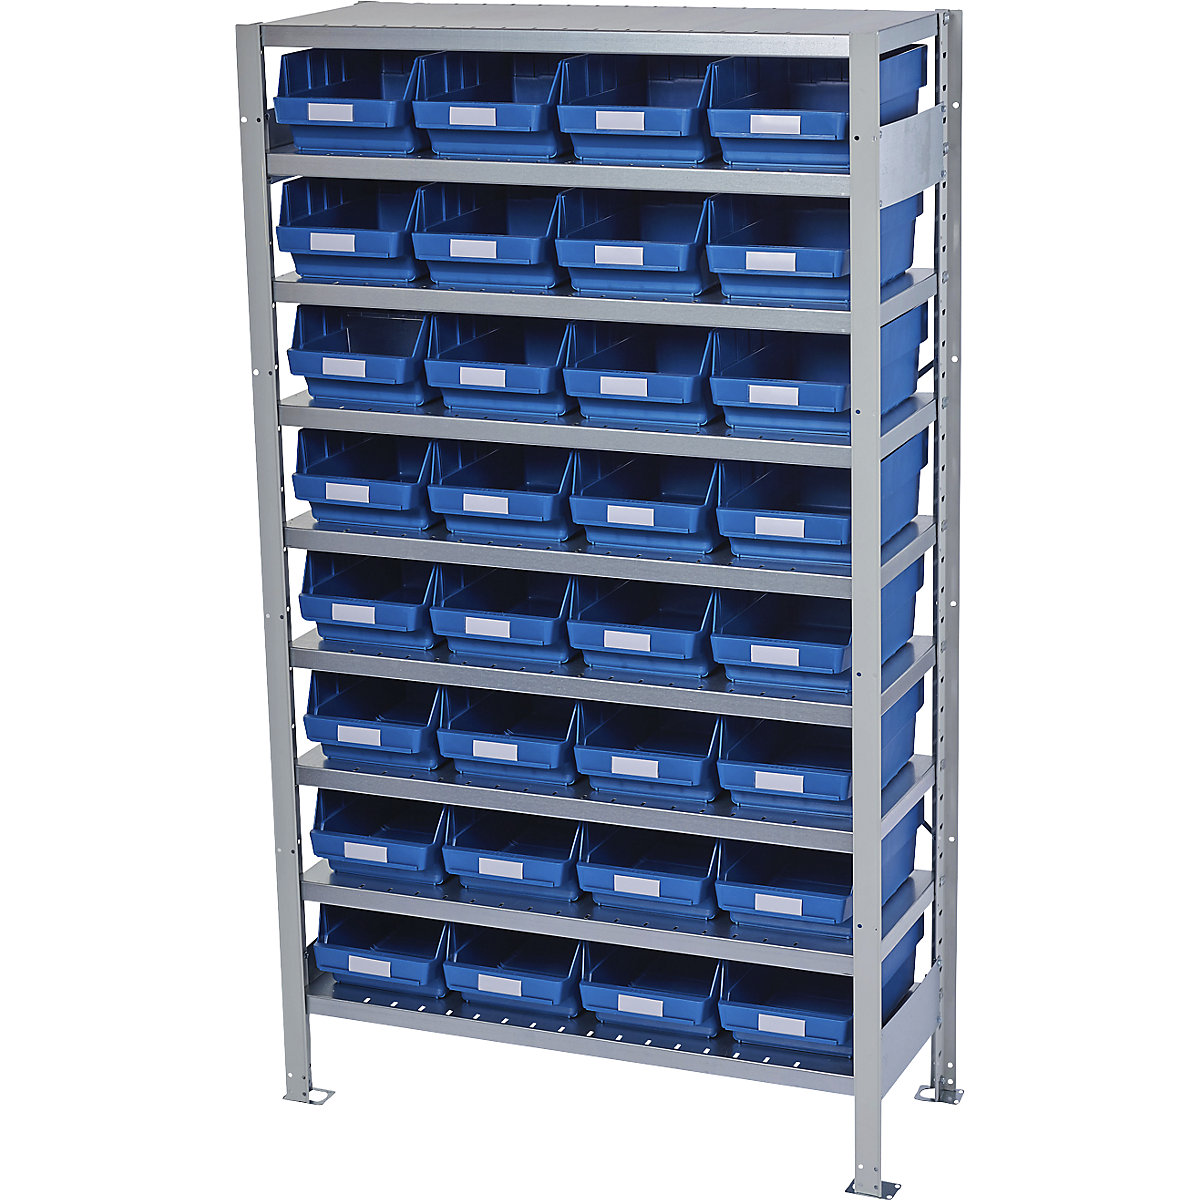 Összedugaszolós állvány dobozokkal – STEMO, állványmagasság 1790 mm, alapállvány, 400 mm mély, 32 kék doboz-13